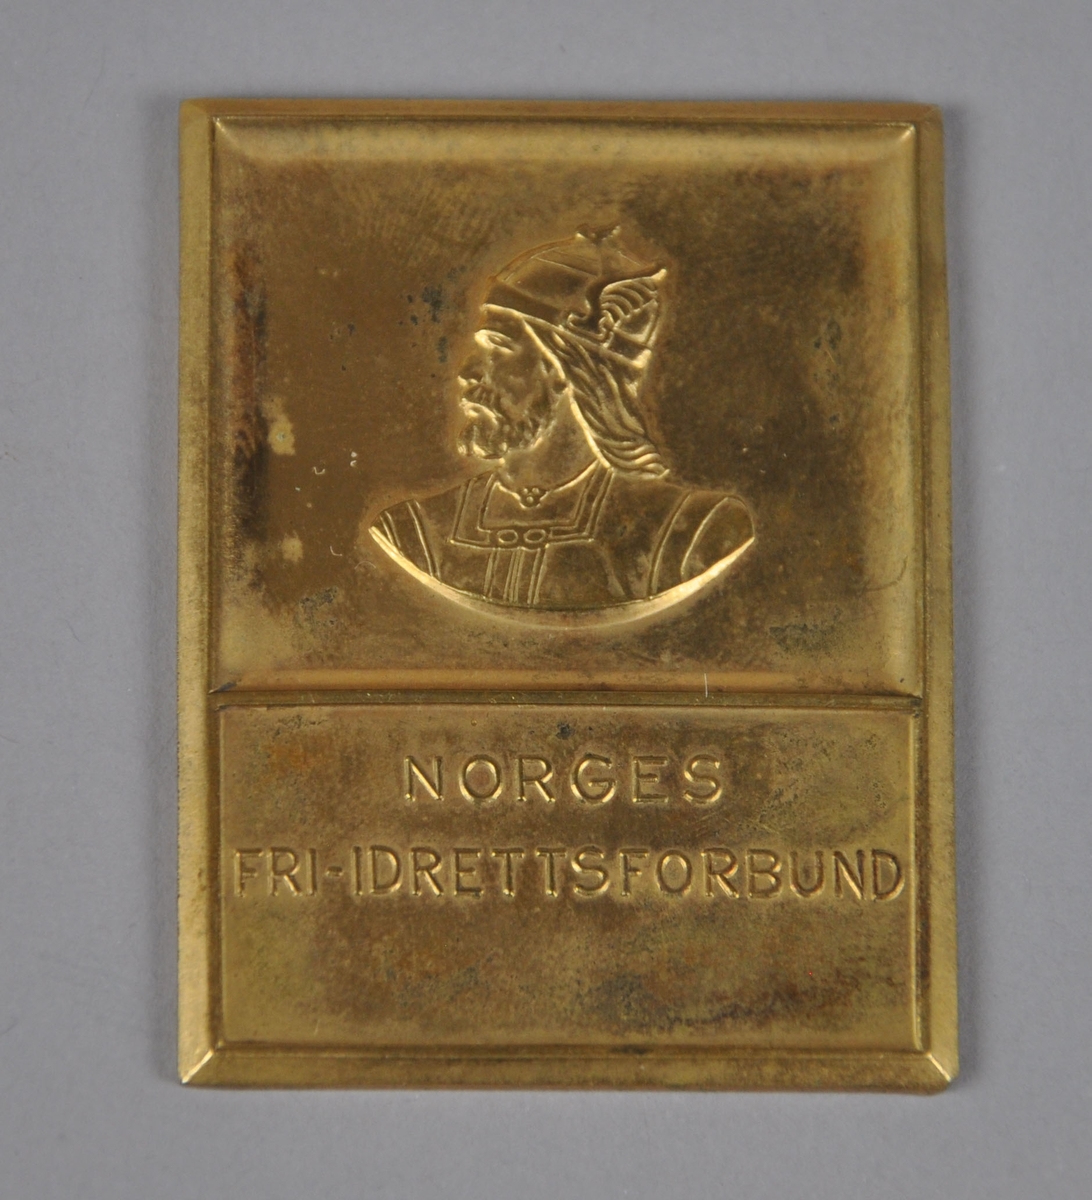 Medalje / plakett med bilde av en viking med hjelm og inskripsjon.
Plaketten ligger i eske med gjenstandsnr. OLM-08236